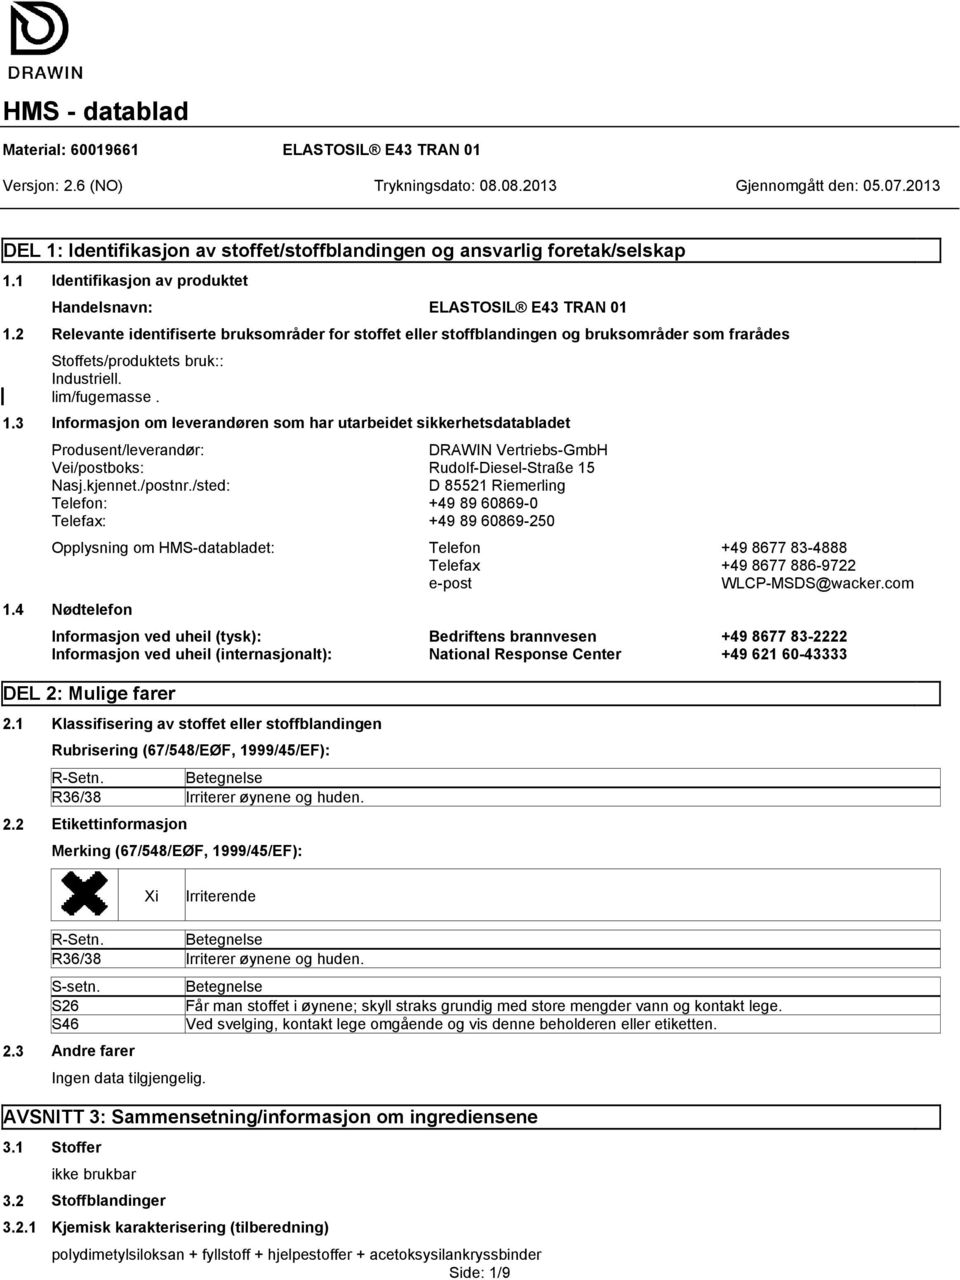 3 Informasjon om leverandøren som har utarbeidet sikkerhetsdatabladet Produsent/leverandør: DRAWIN Vertriebs-GmbH Vei/postboks: Rudolf-Diesel-Straße 15 Nasj.kjennet./postnr.